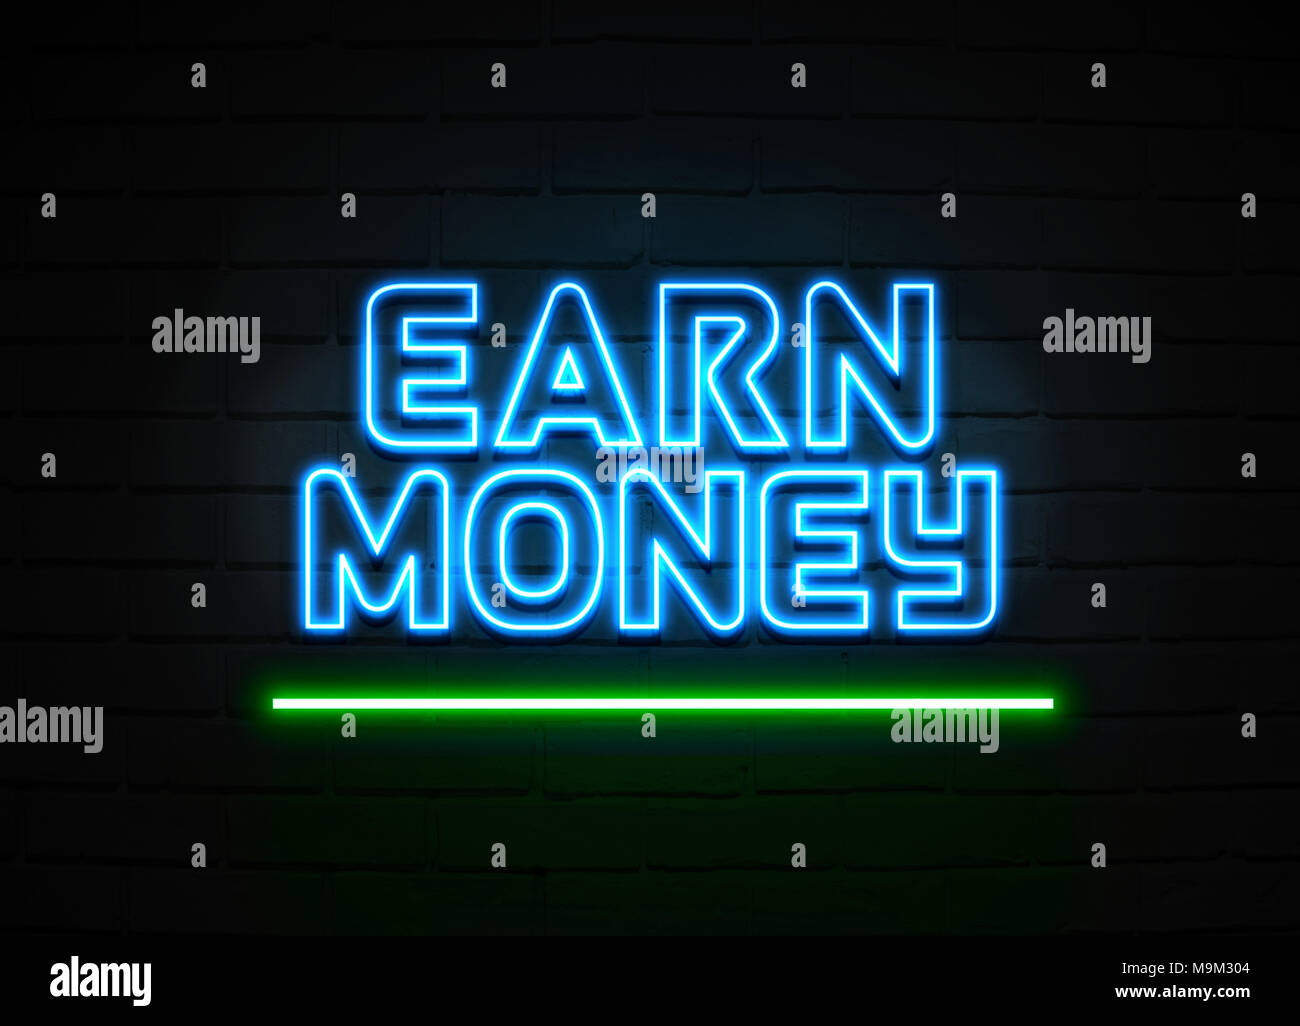 Geld verdienen Leuchtreklame - glühende Leuchtreklame auf brickwall Wand - 3D-Royalty Free Stock Illustration dargestellt. Stockfoto